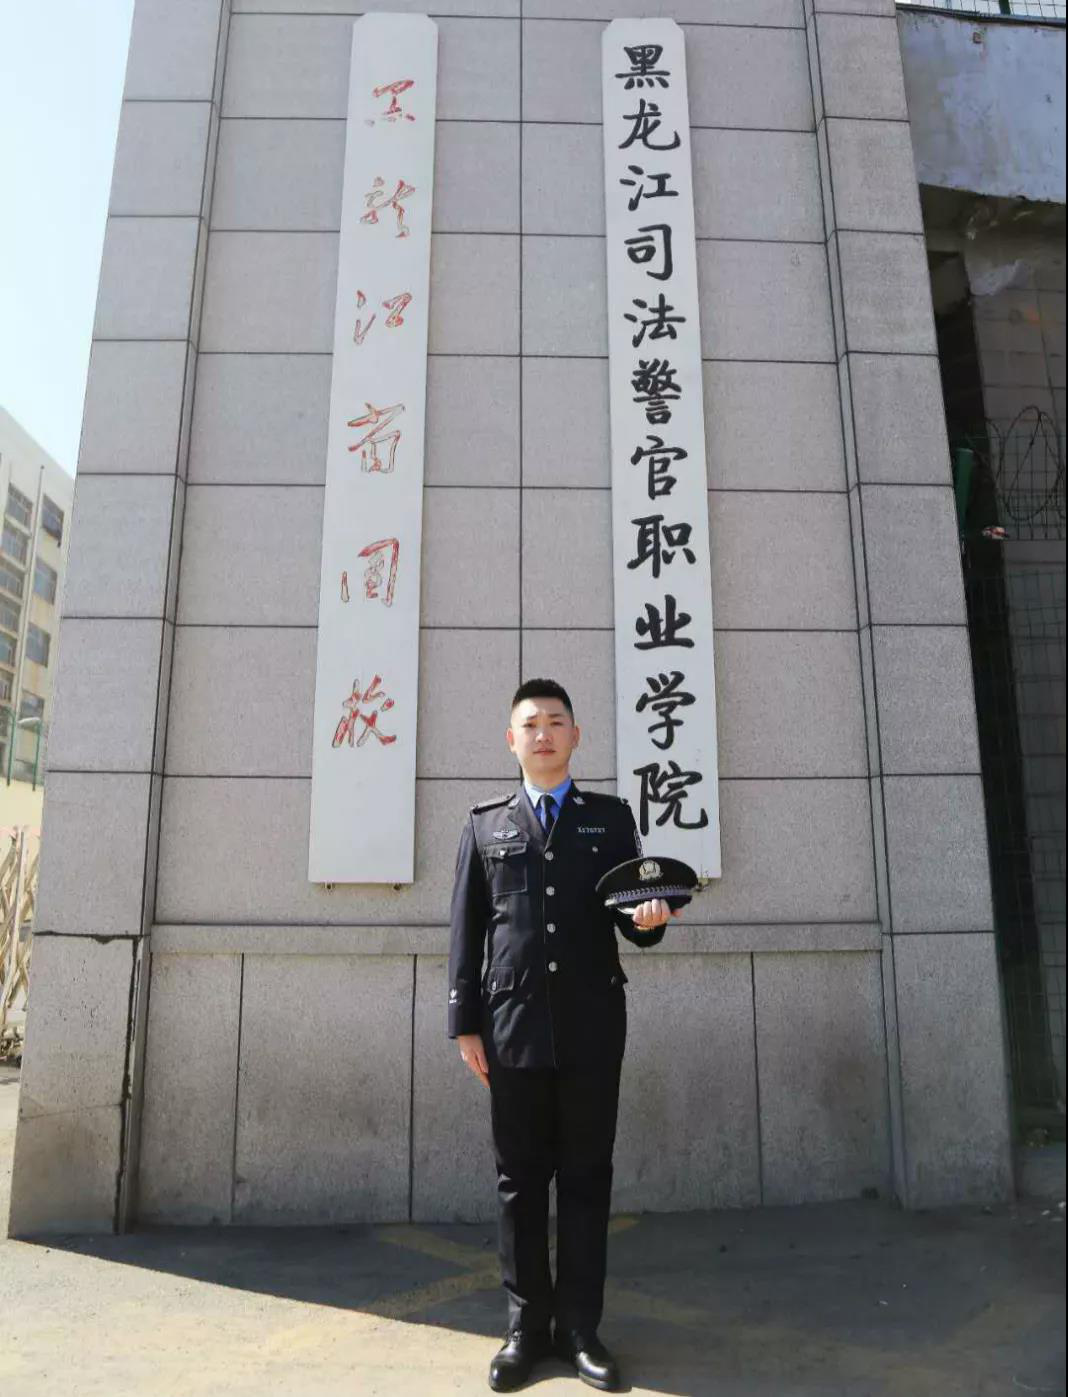 原创"战役"前线的大学生"警察" 一一黑龙江省司法警官学院熊佳辉